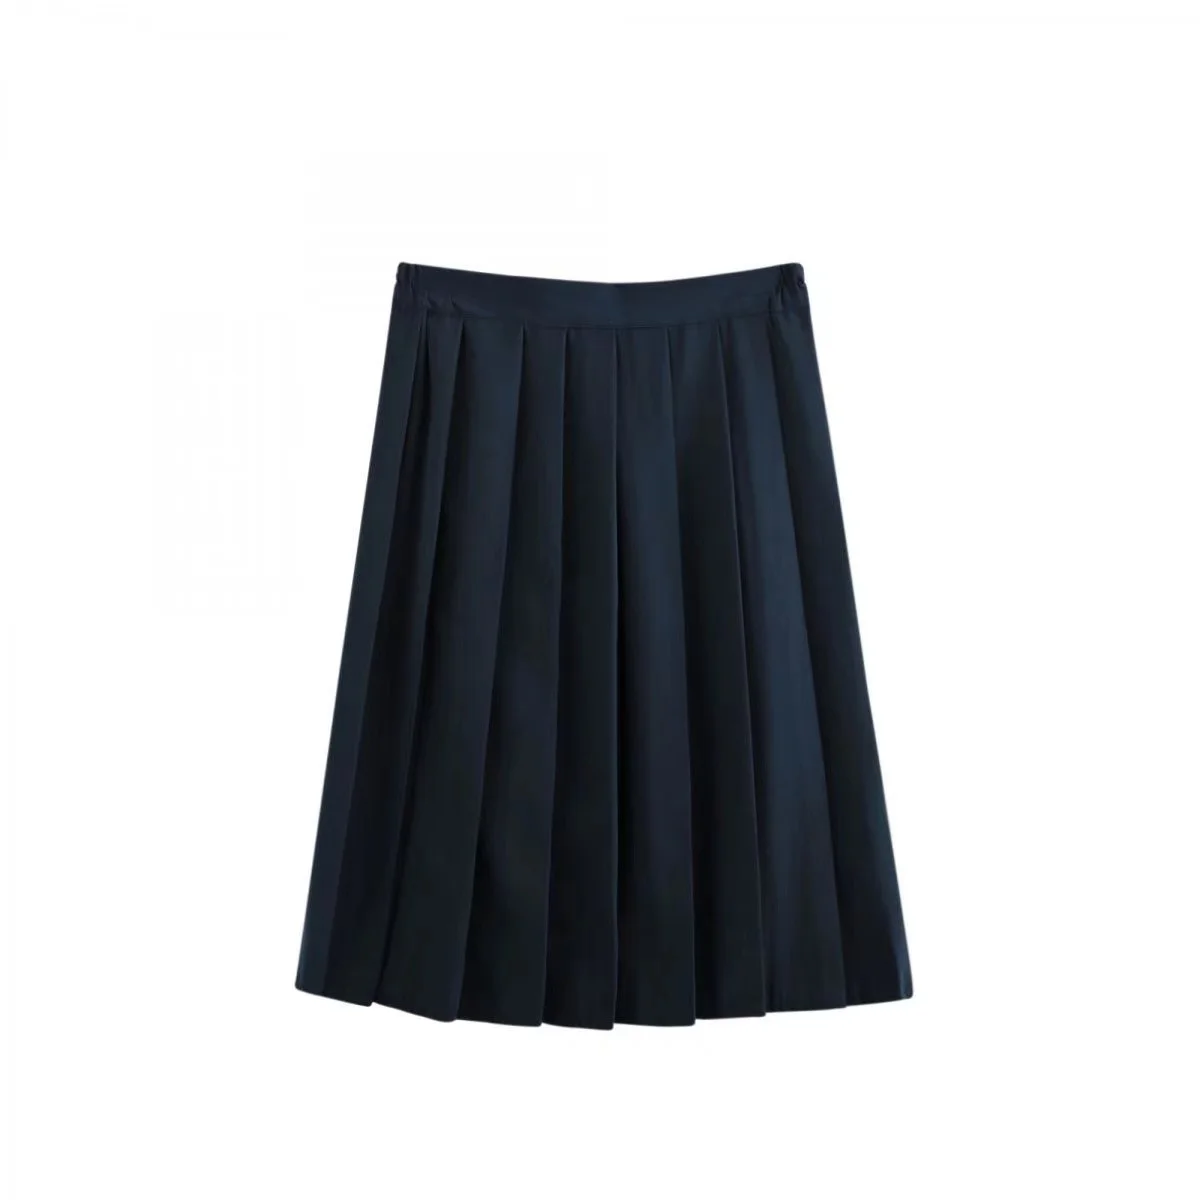 Girls Womens Ladies School Uniform Skirt Black Grey Pleated Knee Length Zip 5-16 